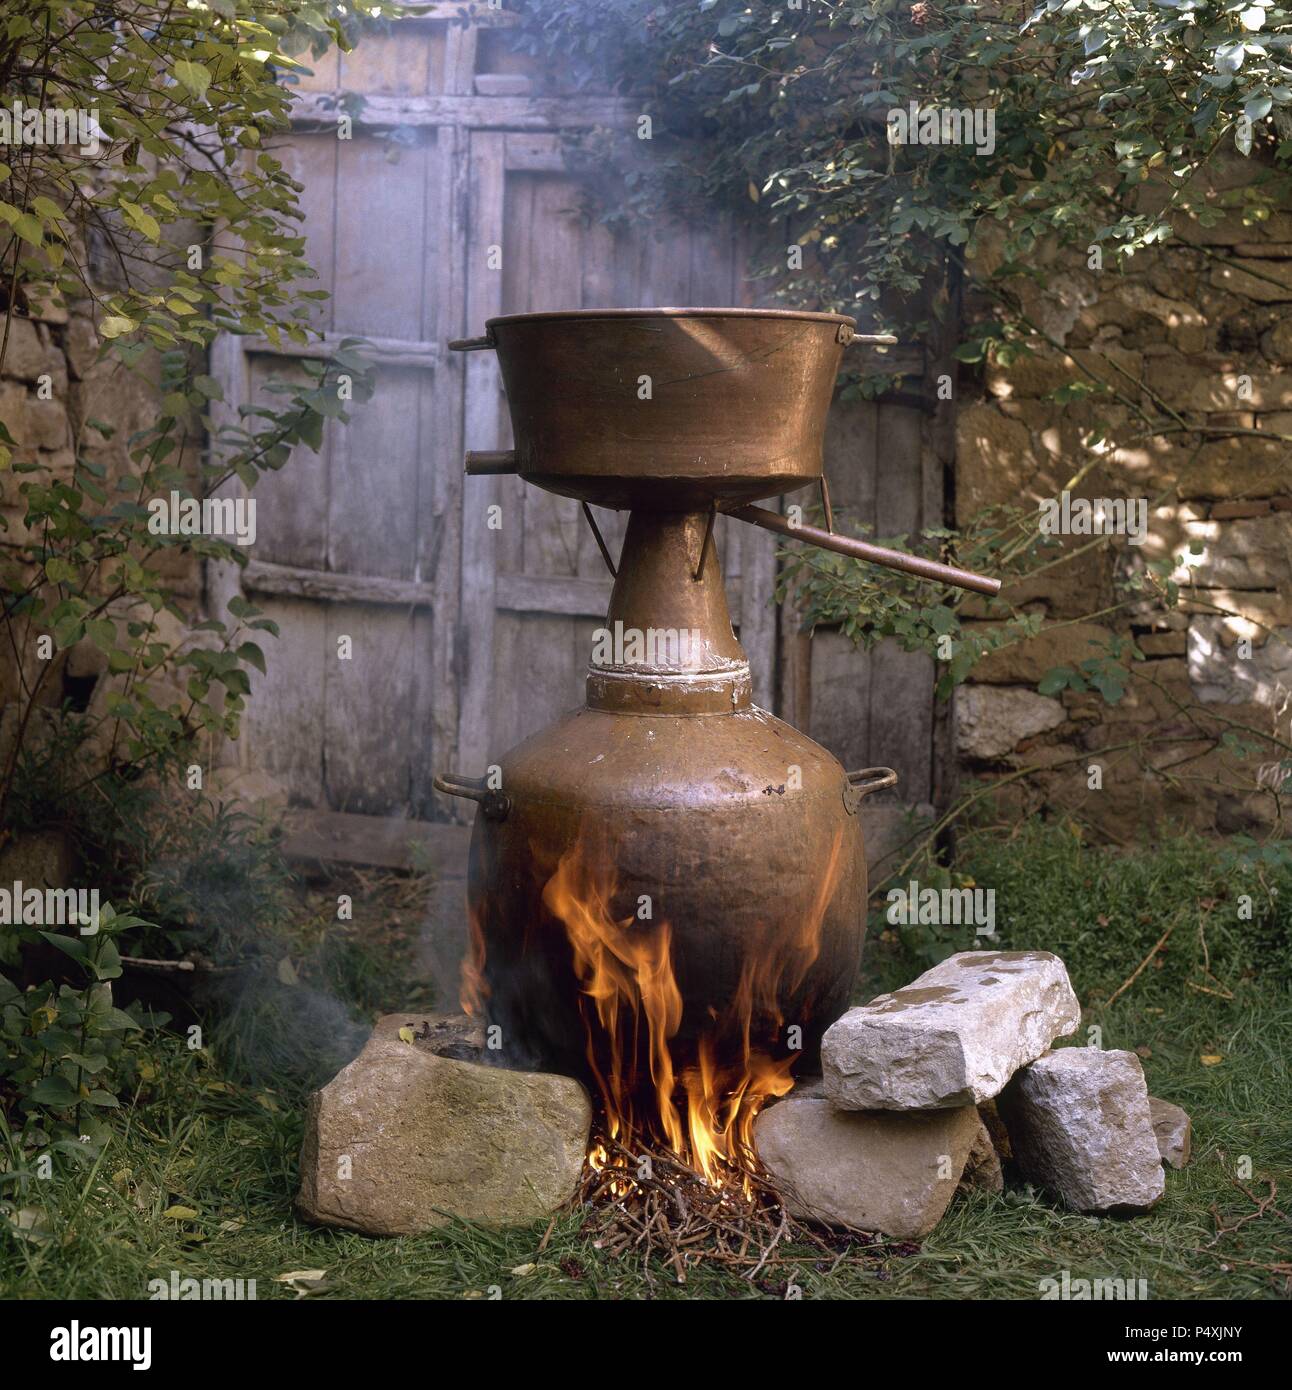 ELABORACION DEL AGUARDIENTE. El fuego actuando sobre el hallejo fermentado que se halla en el recipiente inferior de la alquitara. Navarra. Stock Photo